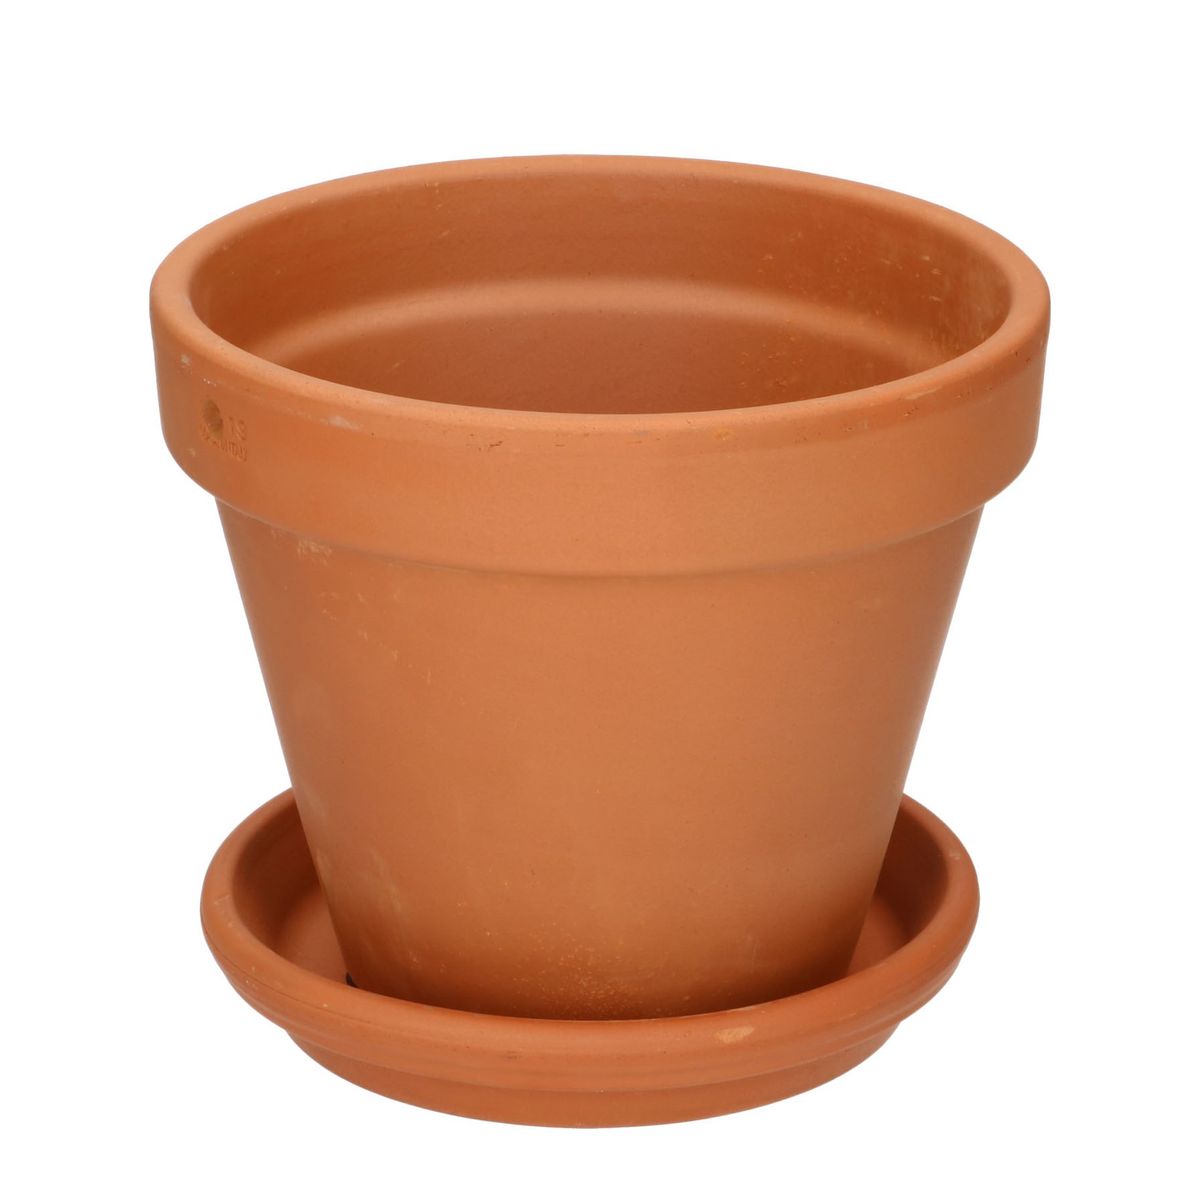 Pot de fleurs Large / Ø 19 x H 14,5 cm - Polystone / Soucoupe intégrée - Hay